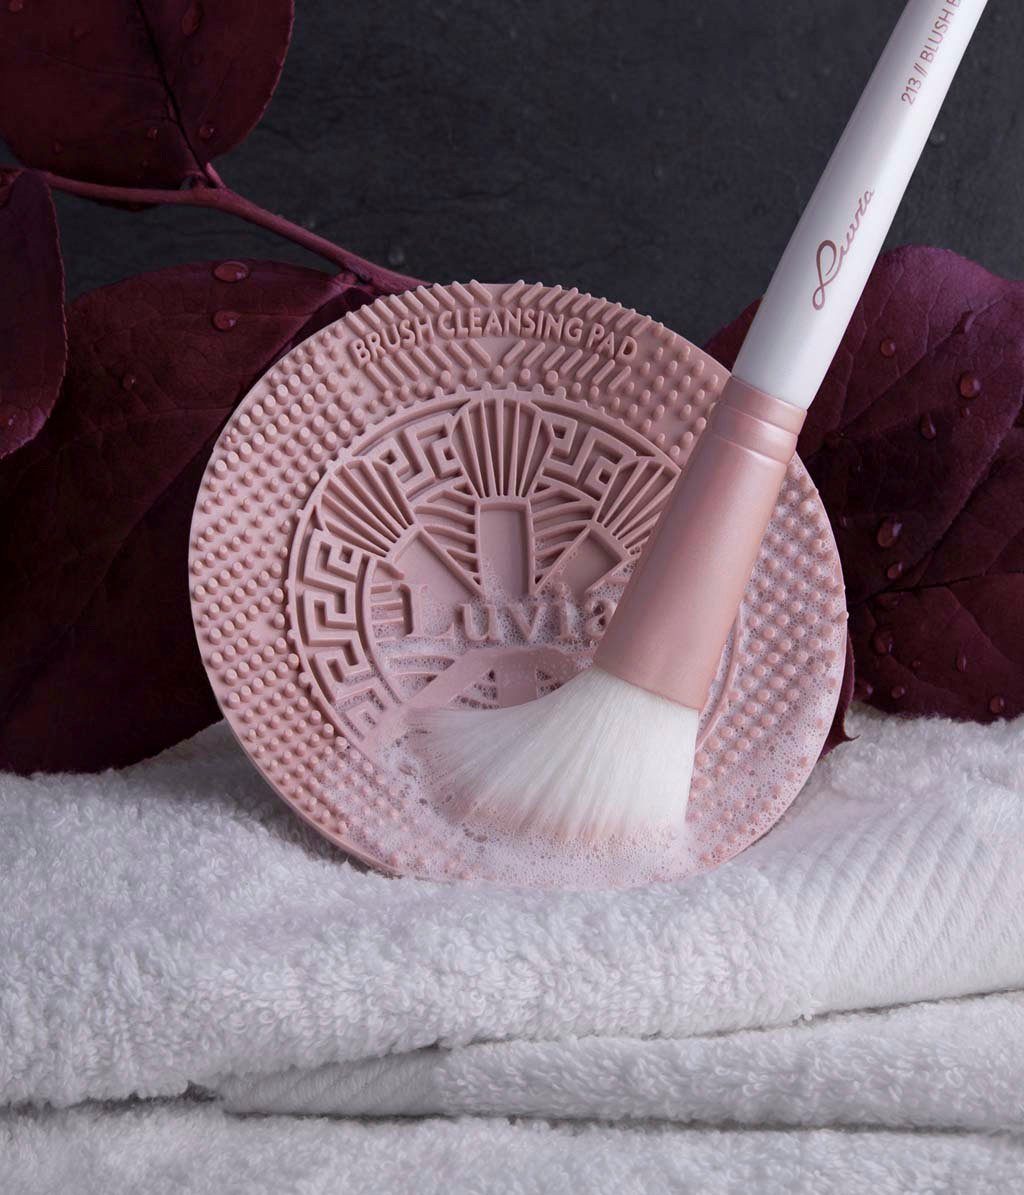 Luvia Cosmetics wassersparende Kosmetikpinsel-Set Reinigung; Design Pad für jede Brush bequem Candy passt Hand. - Cleansing Black, in